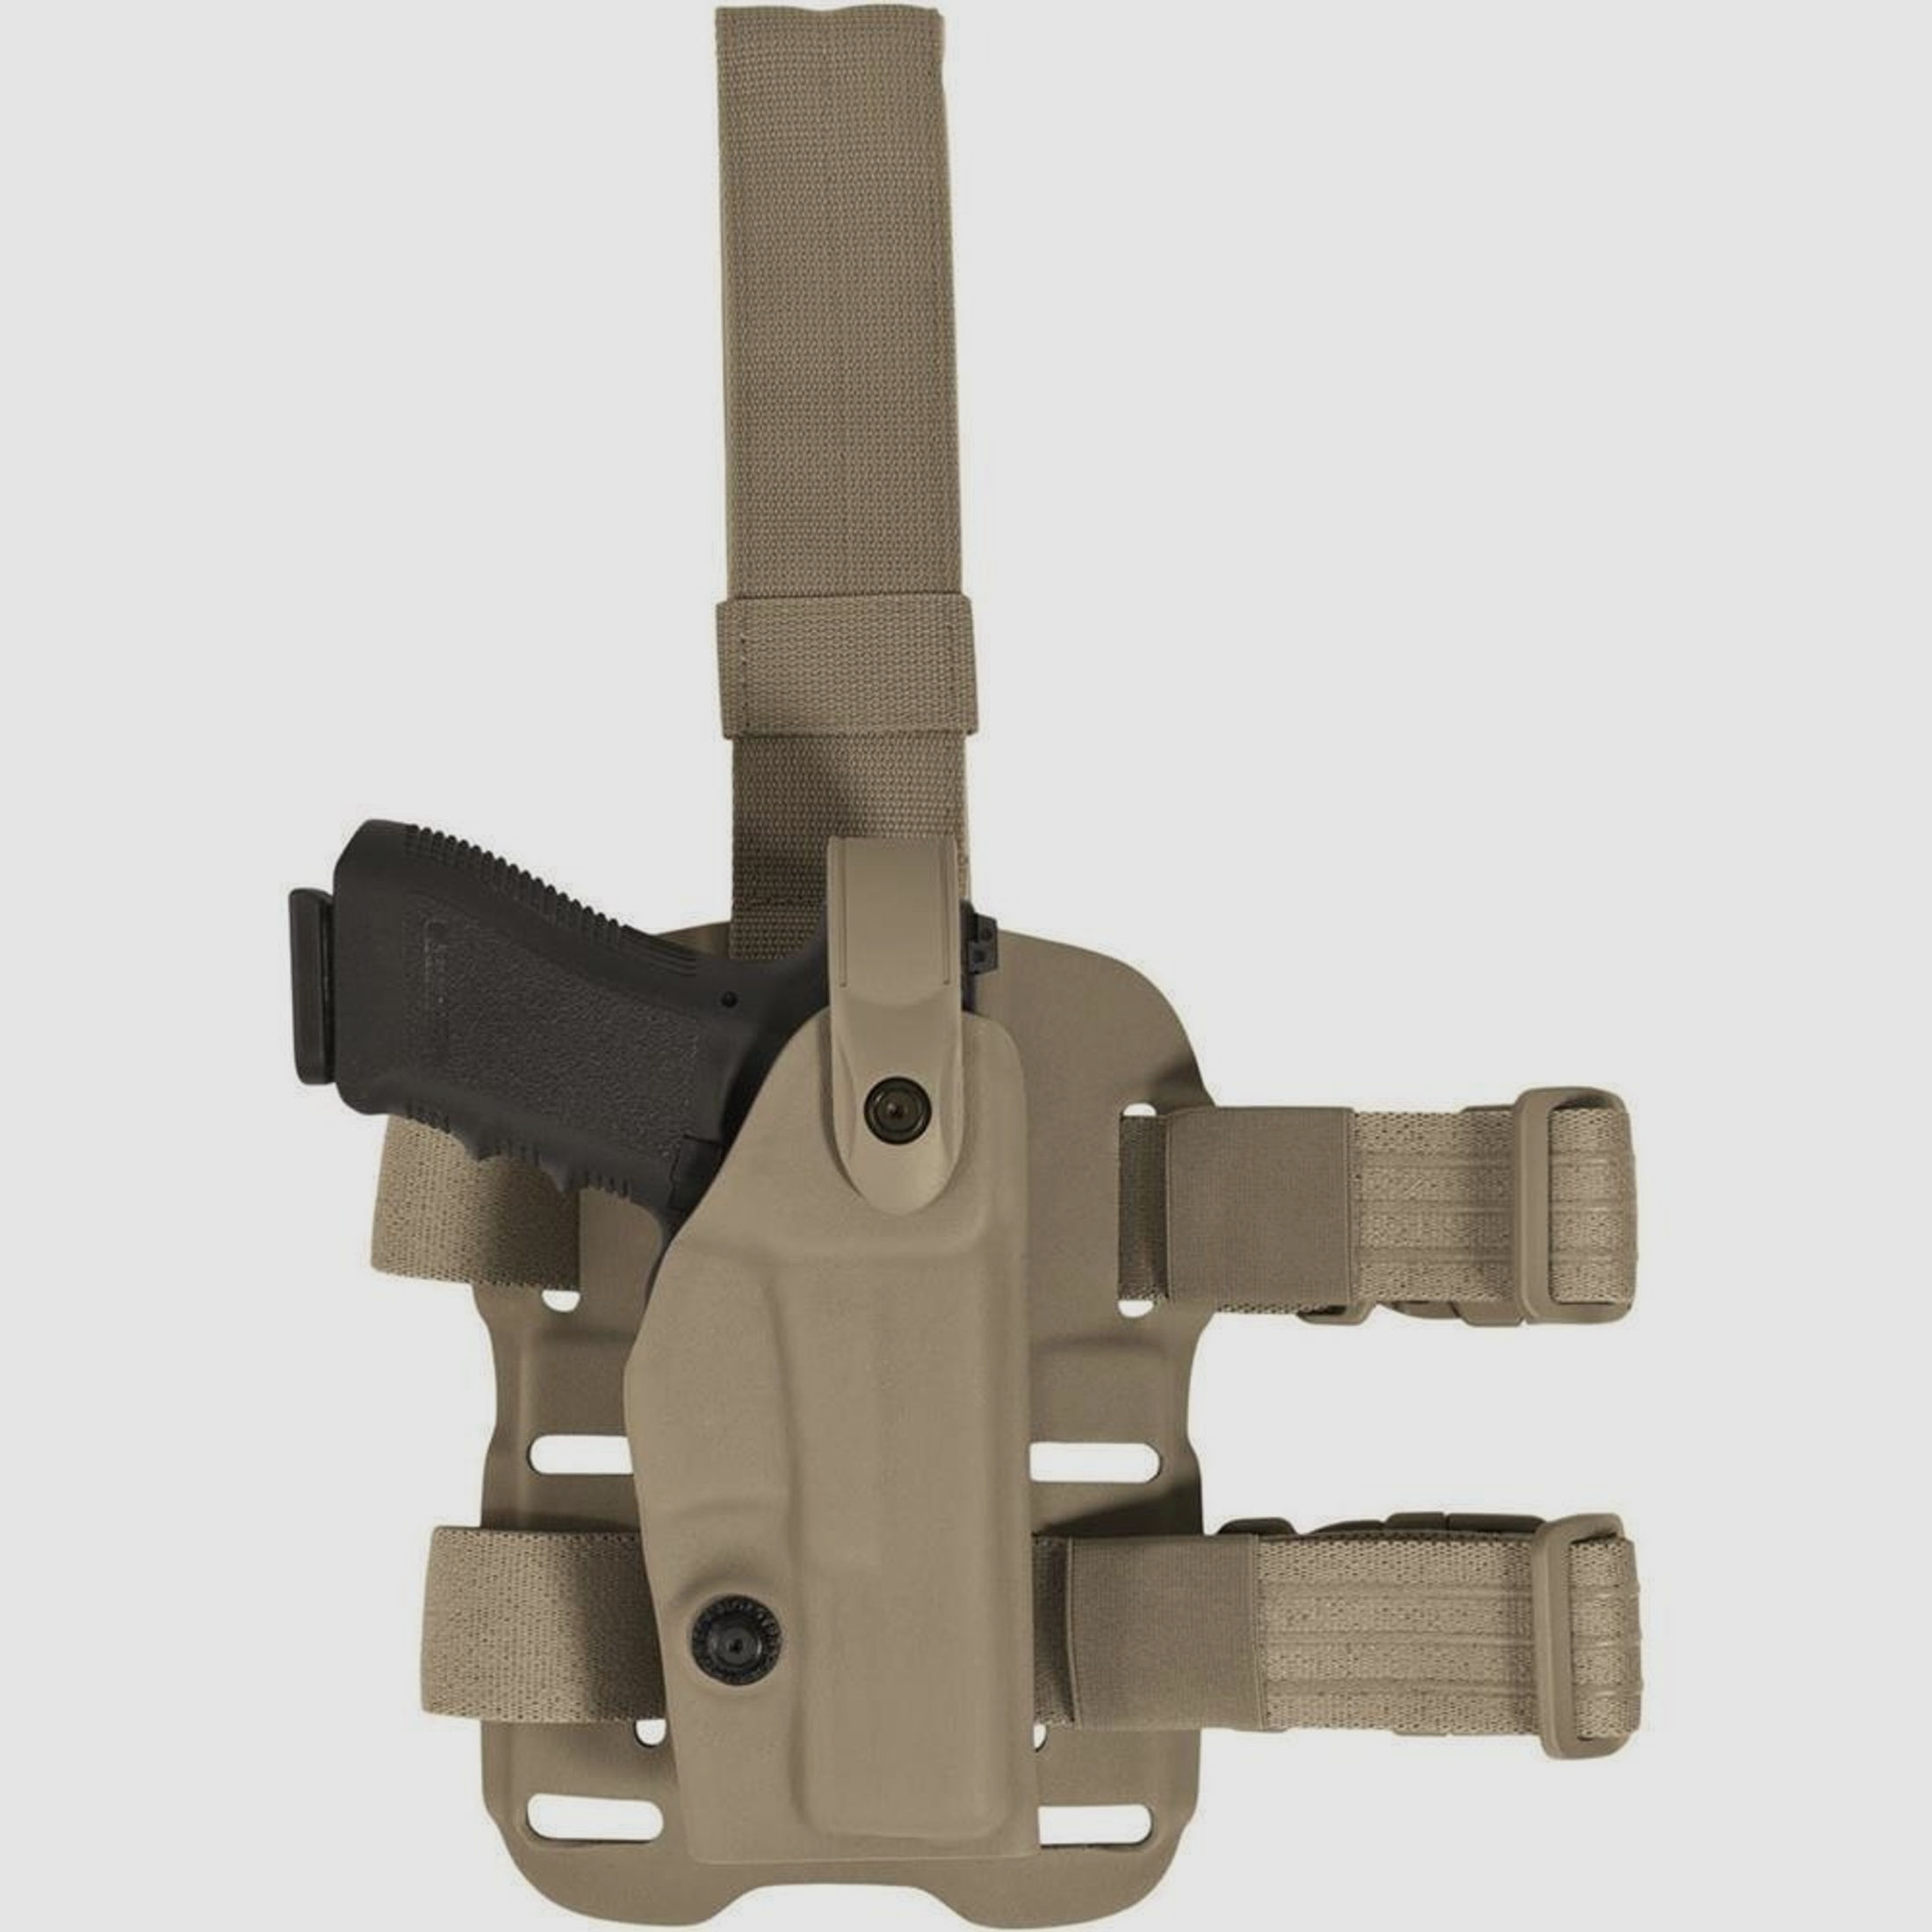 Modulares Oberschenkelholster "VETERAN" mit Sicherheitslevel II Walther P99Q / PPQ-Schwarz-Linkshänder